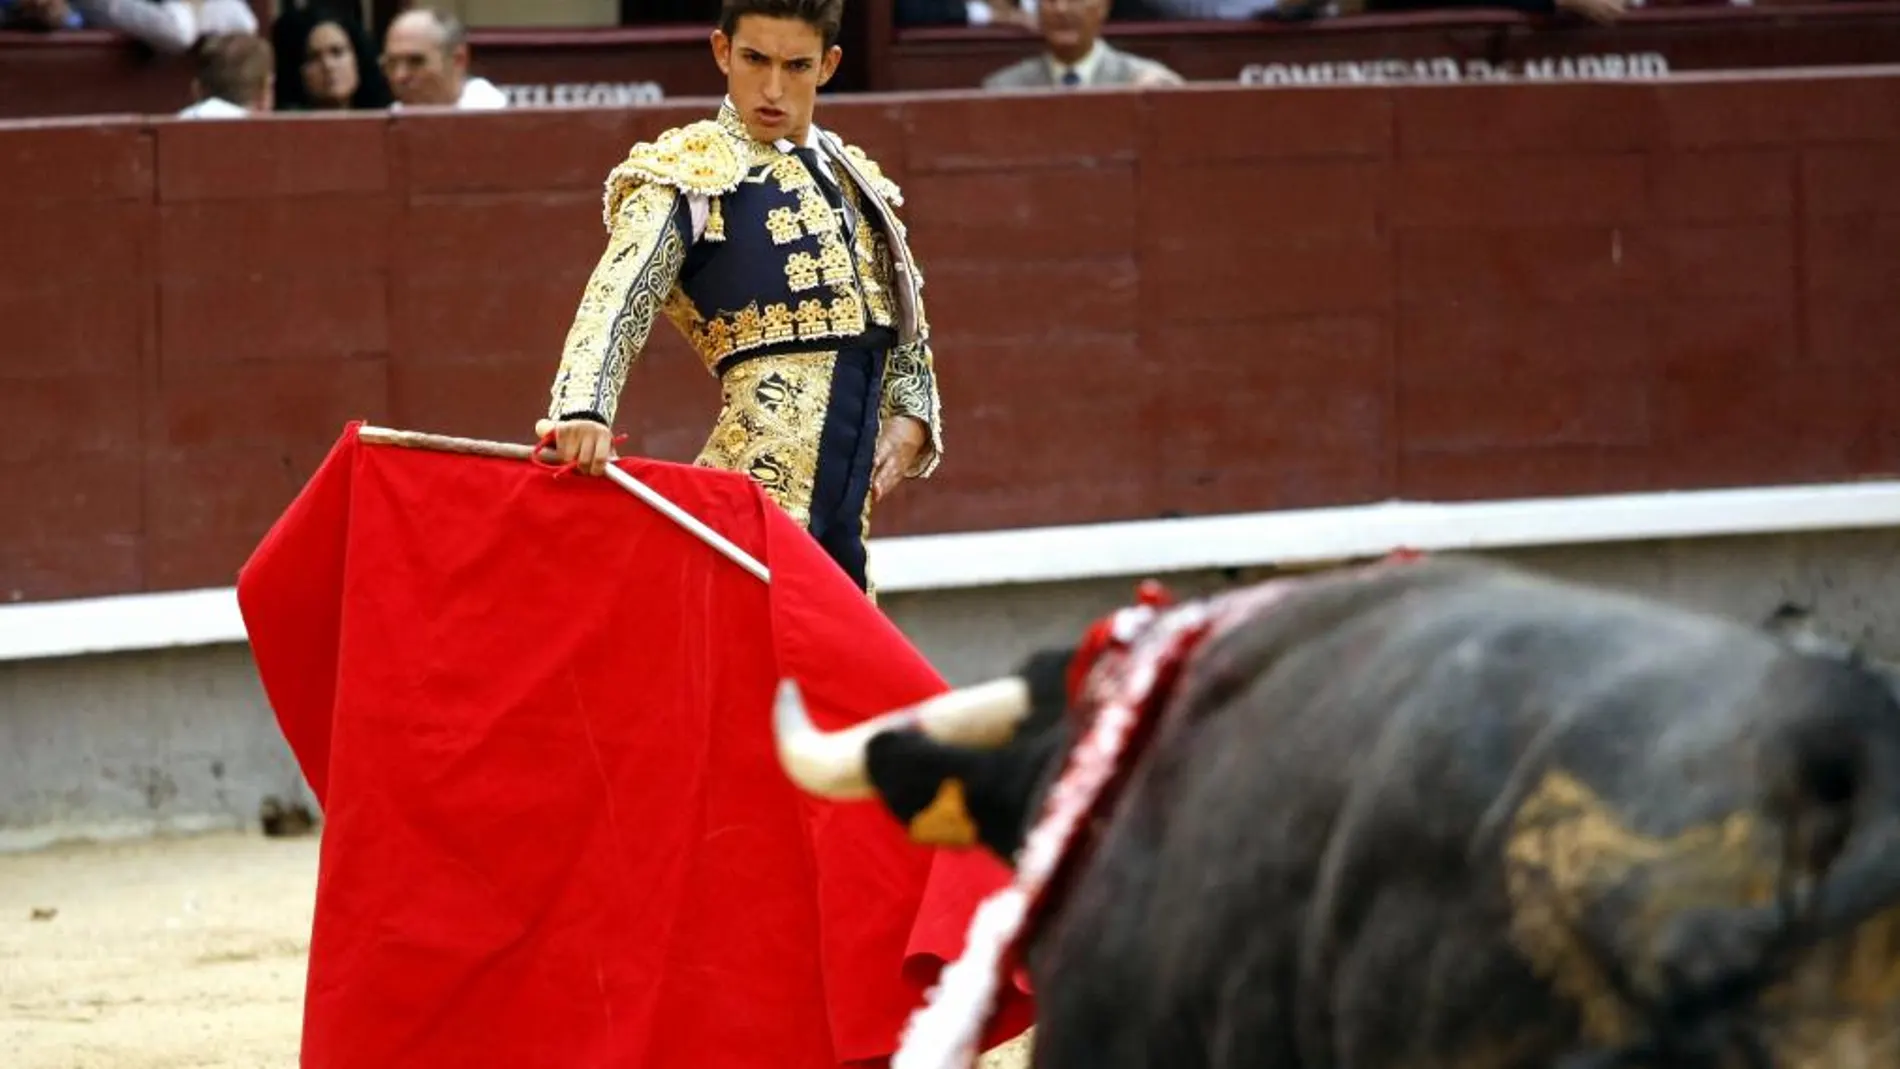 El valenciano, en imagen de archivo, se dispone a comenzar una faena en Las Ventas